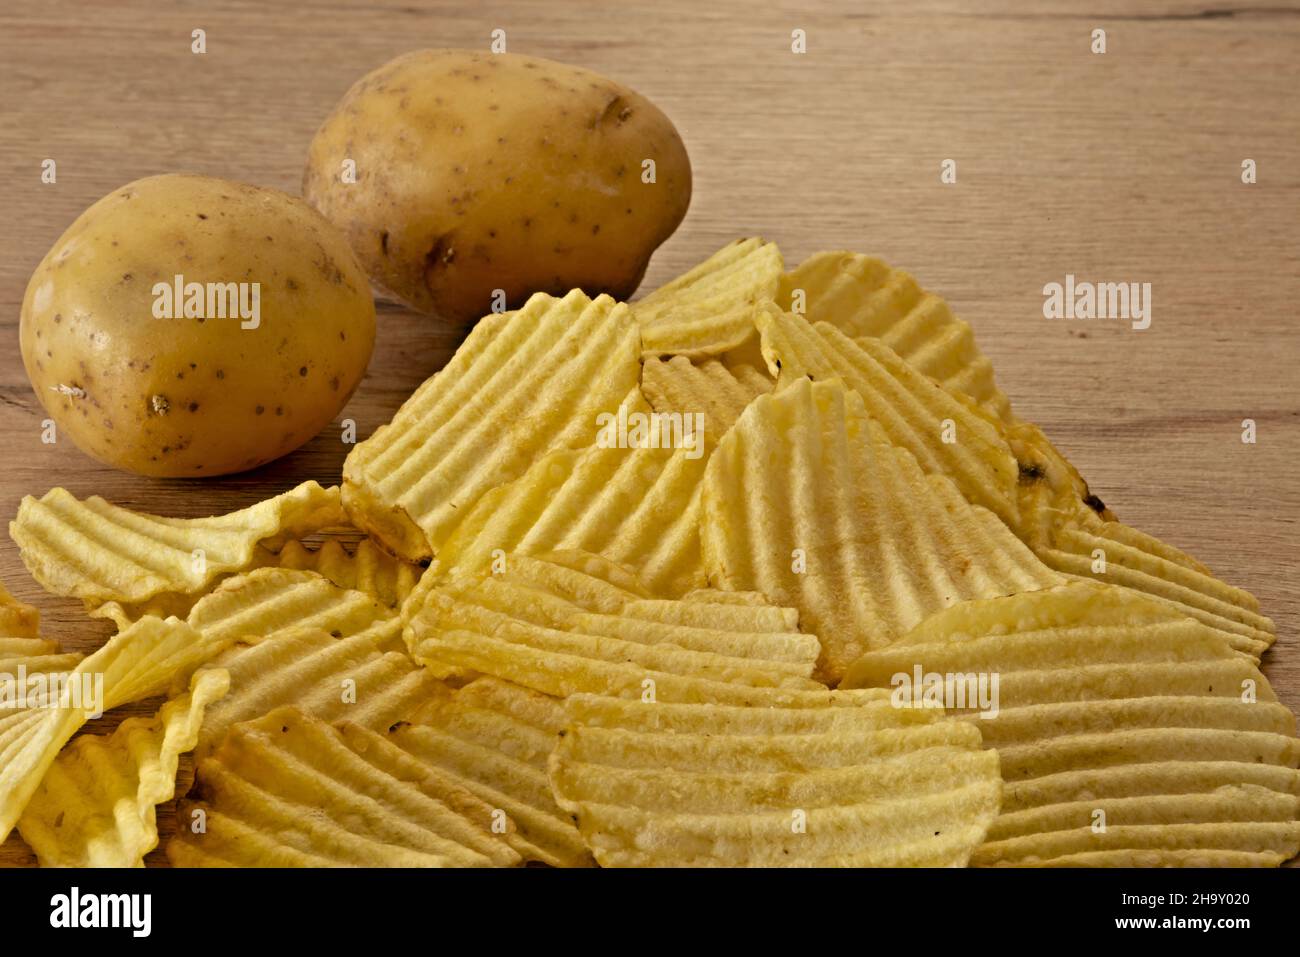 patate - patate fritte sul tavolo primo piano con patate fresche Banque D'Images